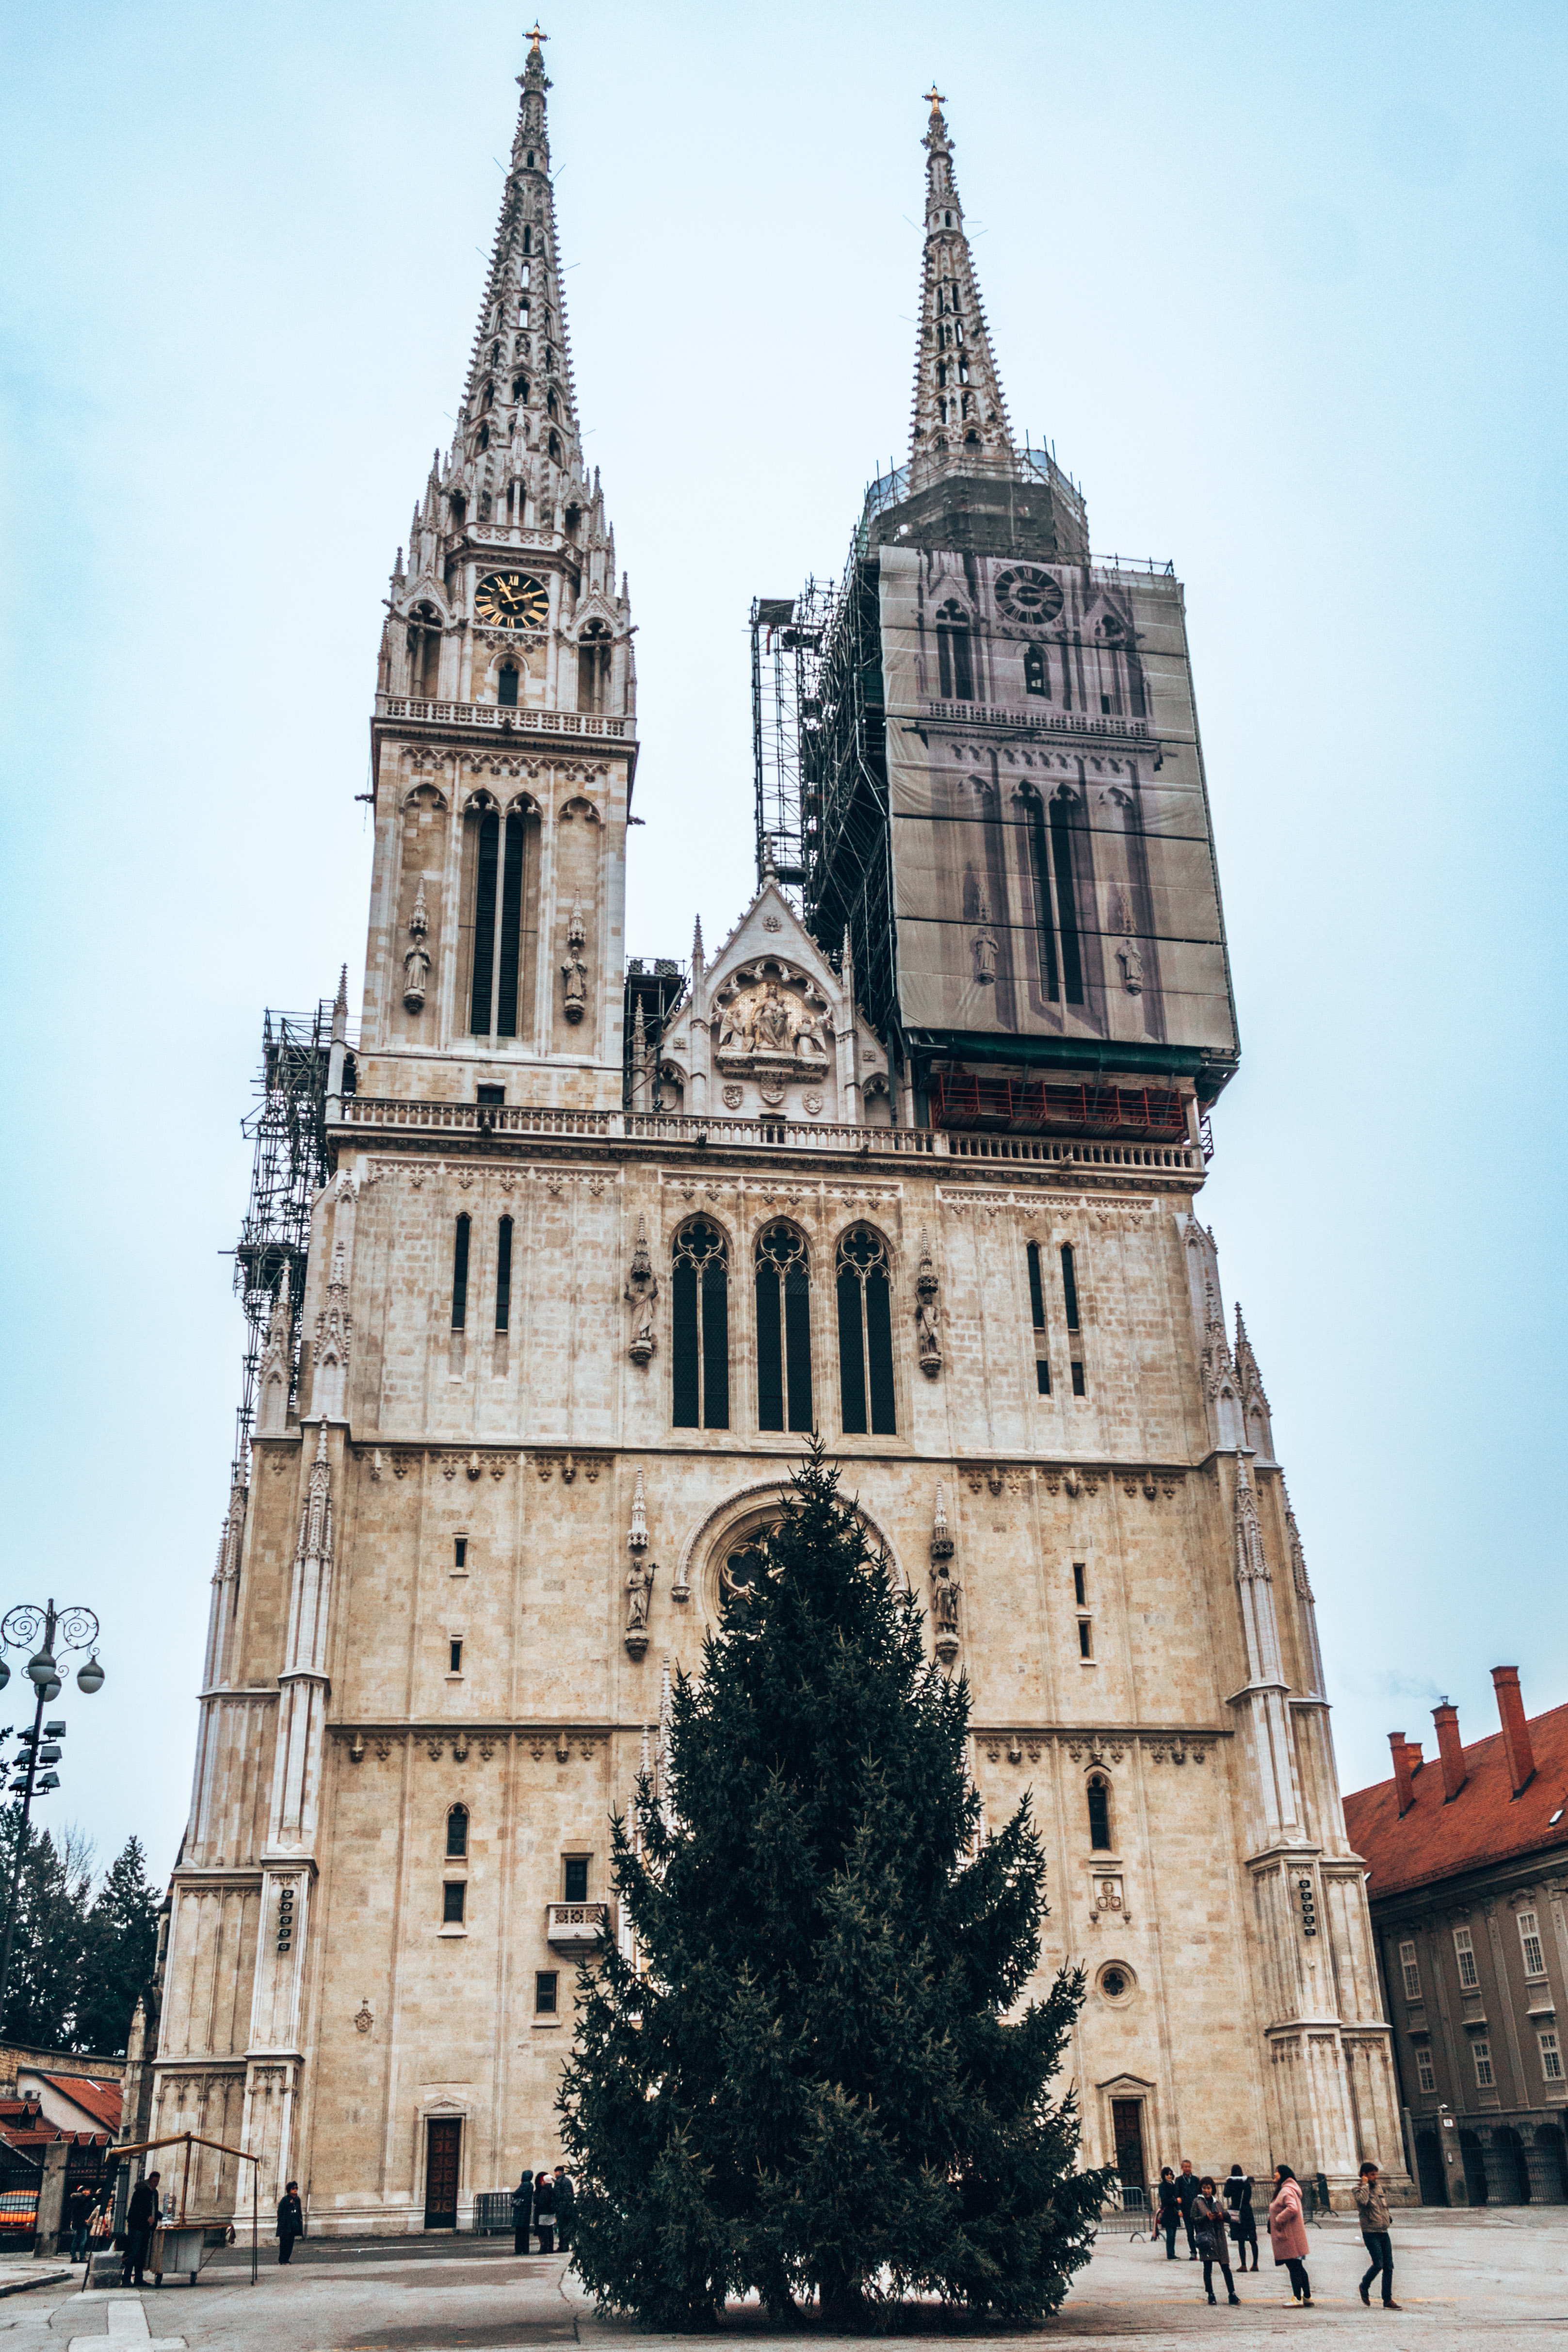 The Zagreb Cathedral in Zagreb, Croatia